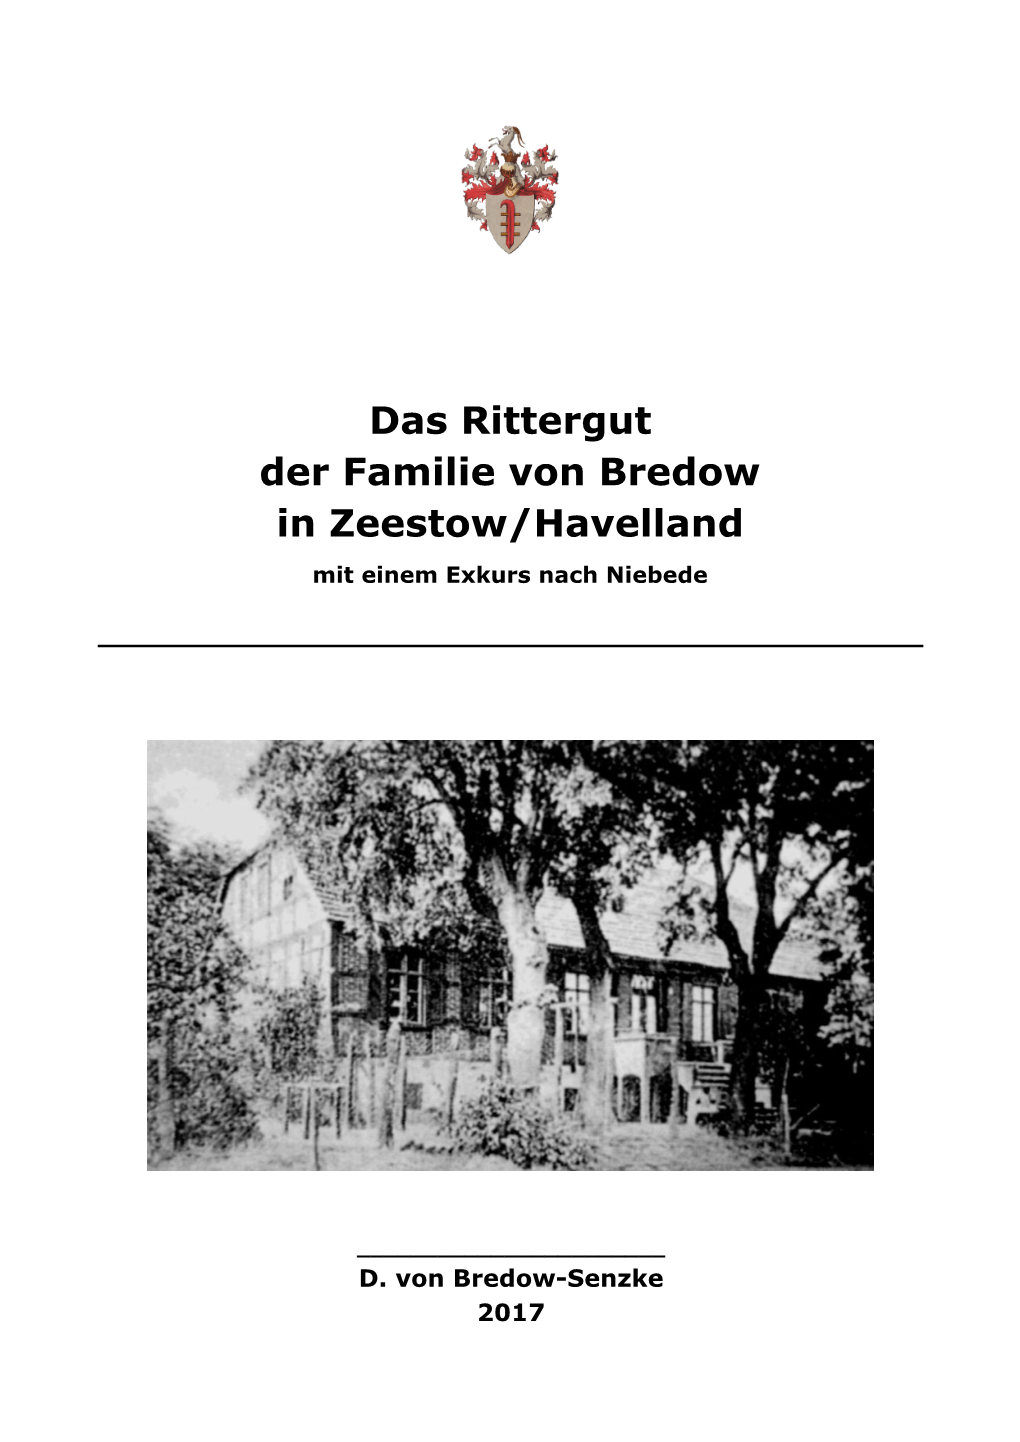 Das Rittergut Der Familie Von Bredow in Zeestow/Havelland Mit Einem Exkurs Nach Niebede